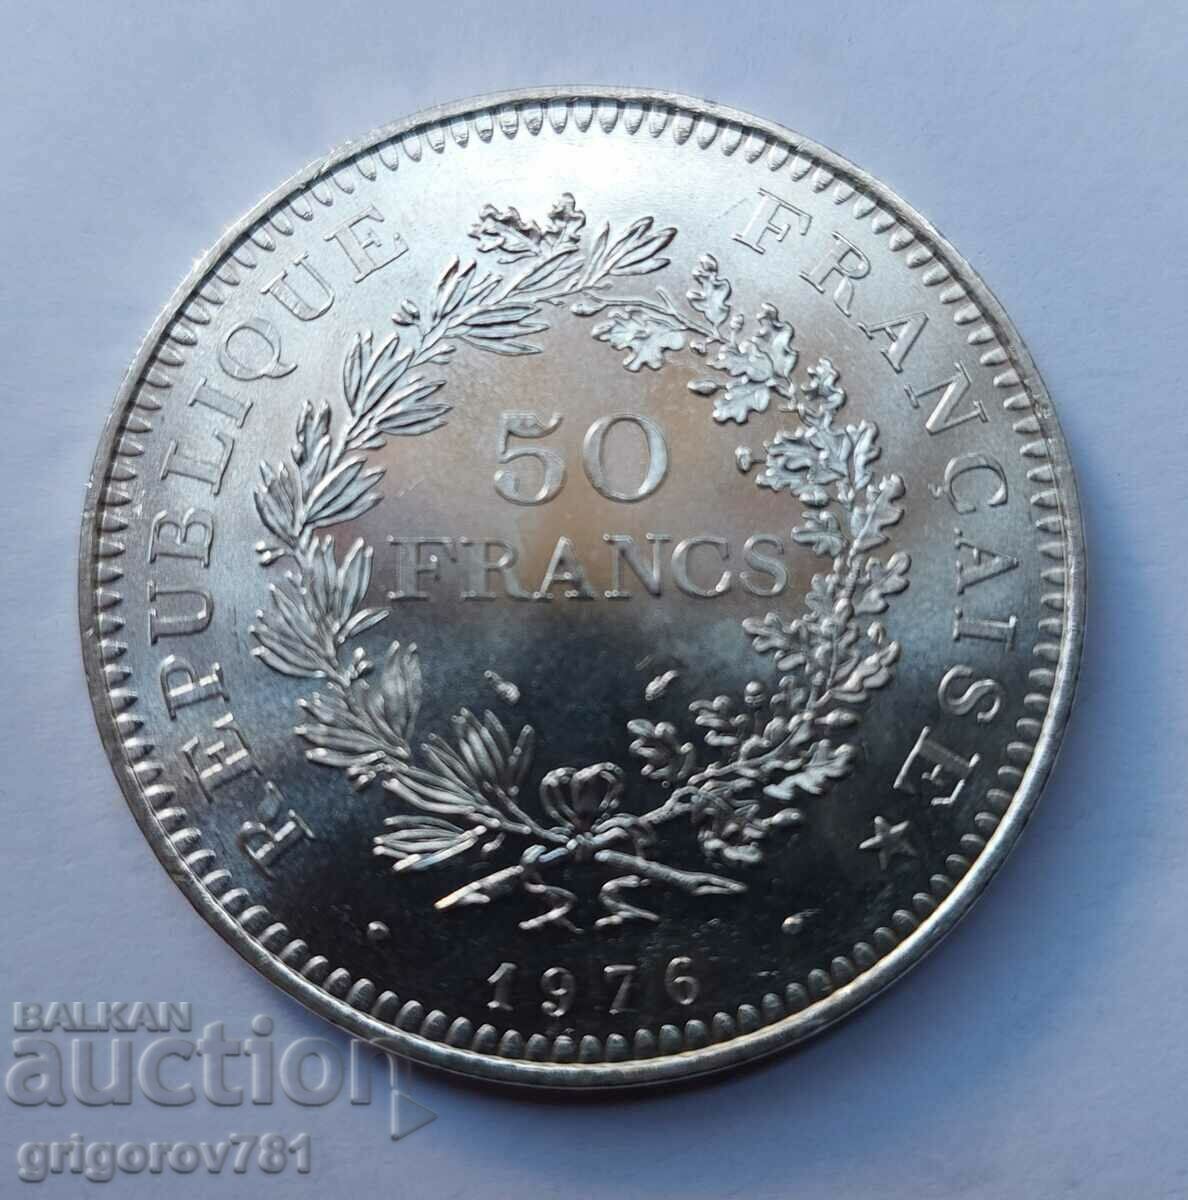 50 Franci Argint Franta 1976 - Moneda de argint #22